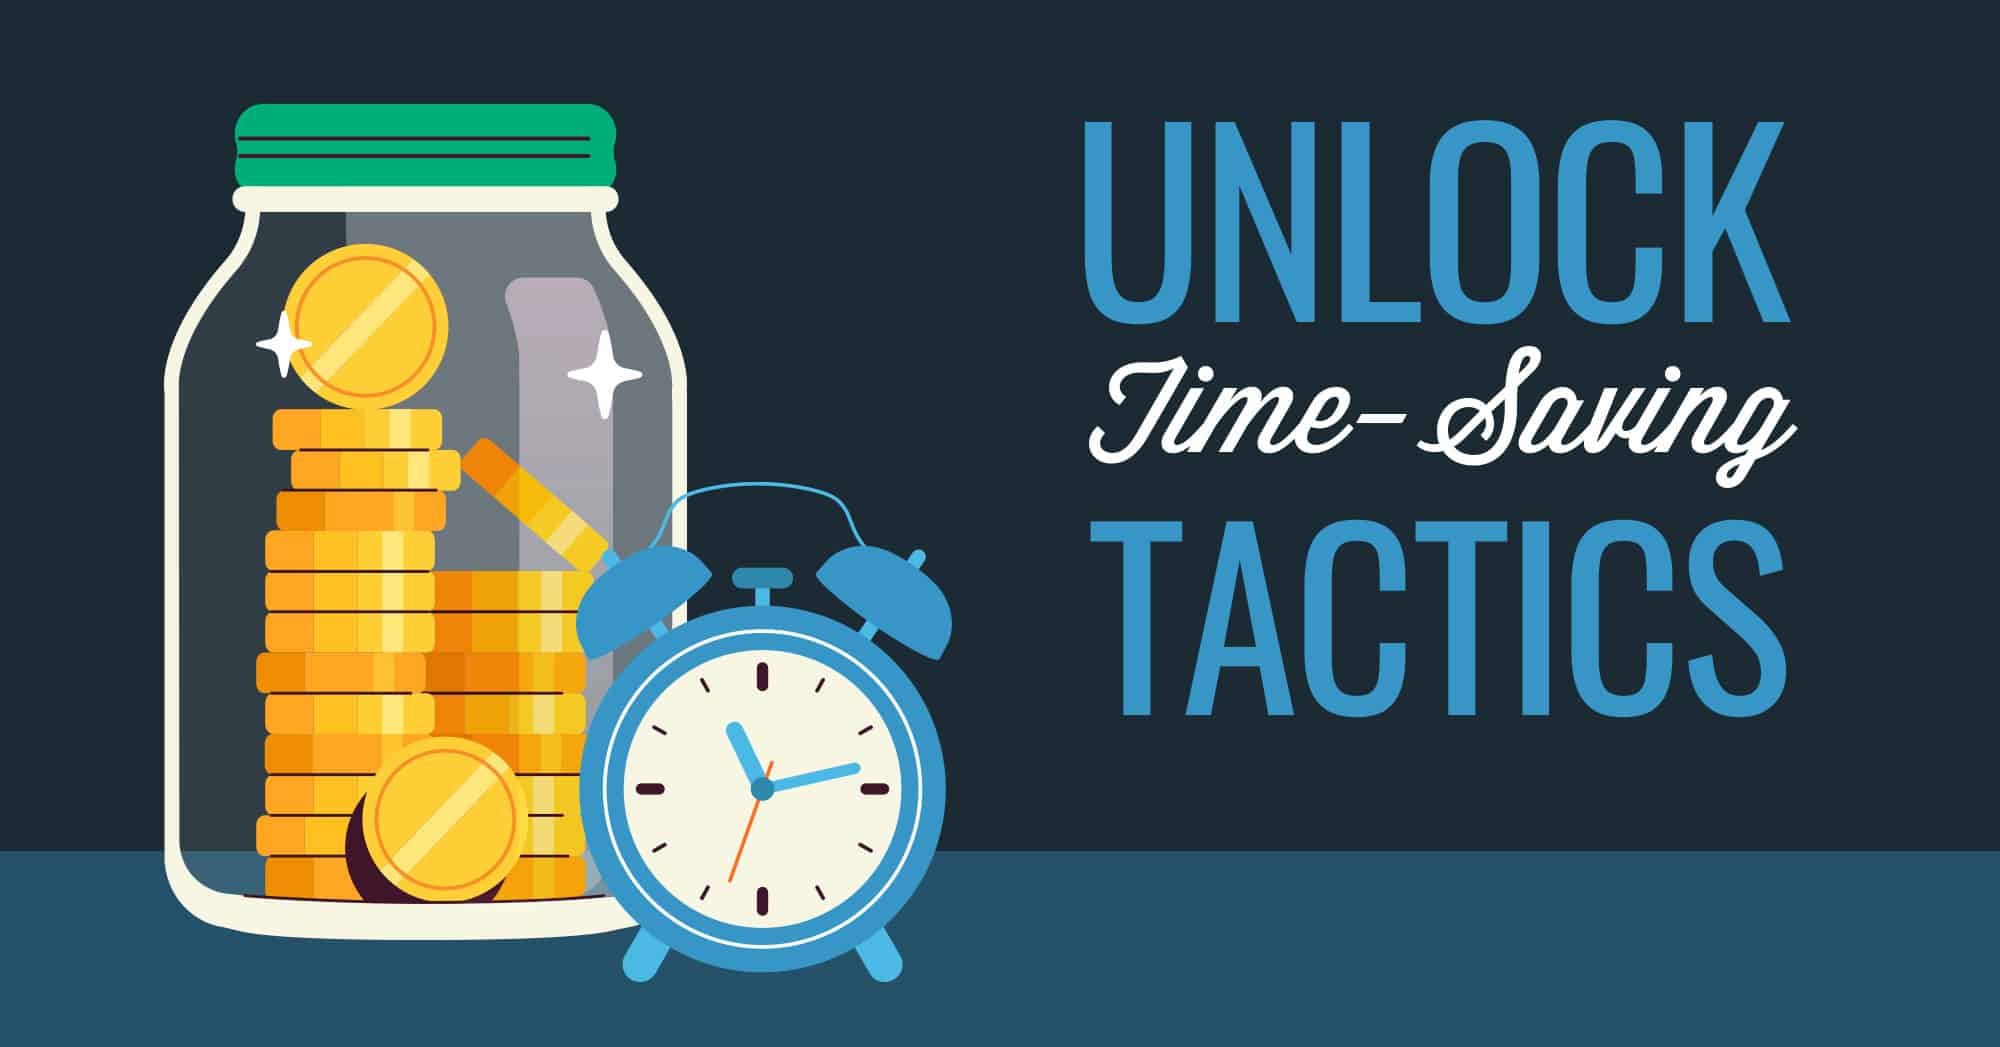 Unlock time-saving tactics